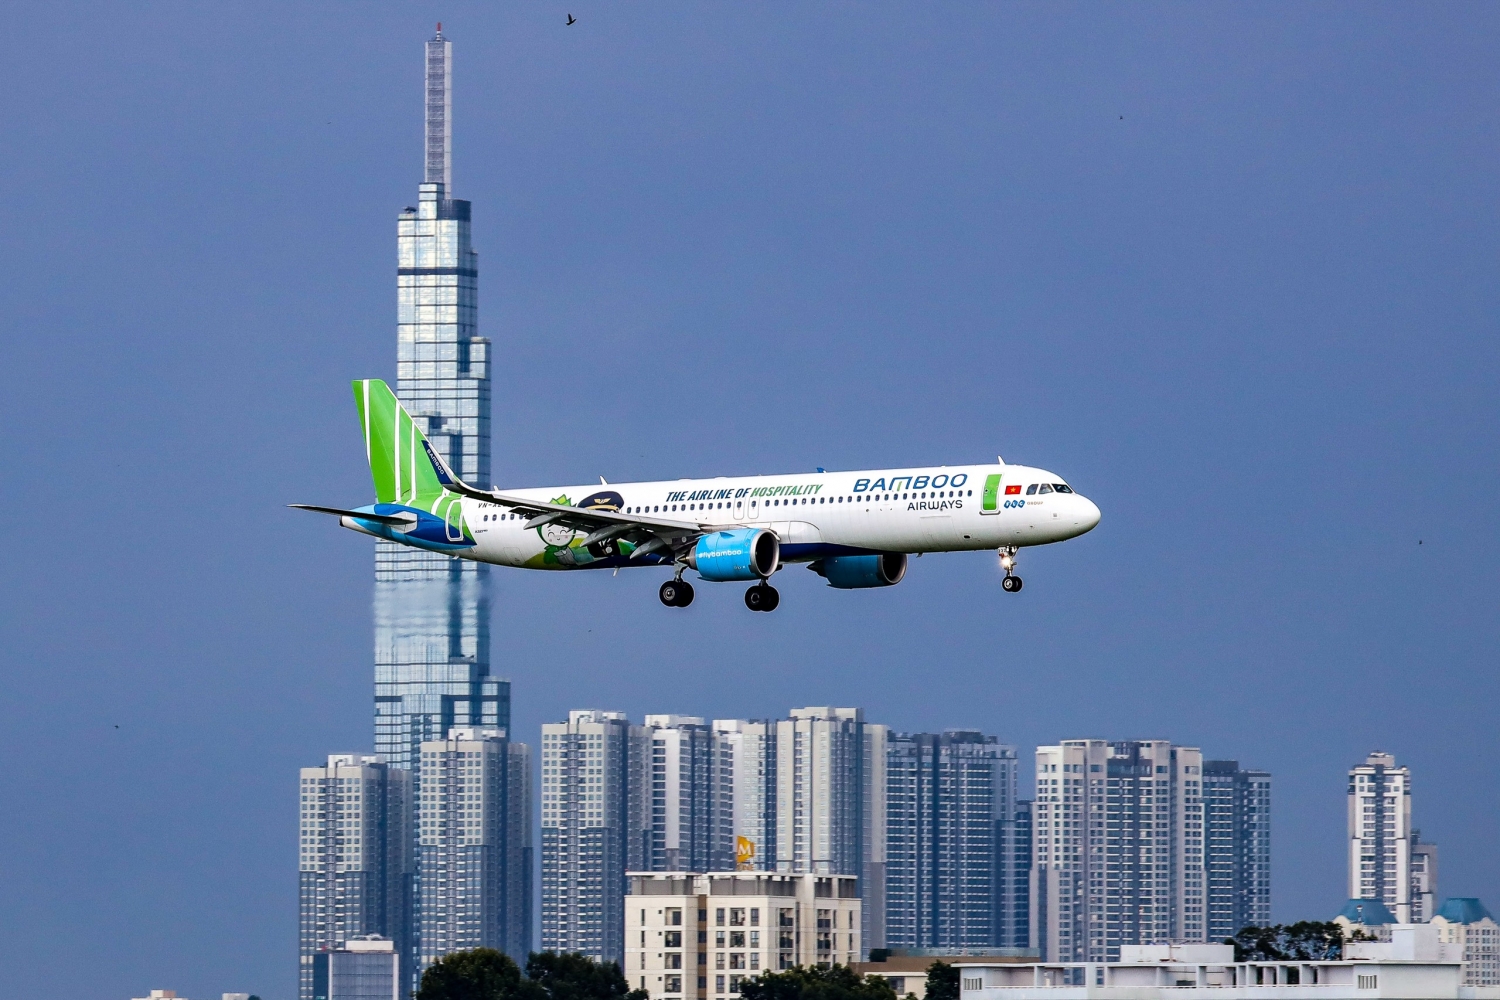 Bùng nổ ưu đãi với combo ‘bay Bamboo Airways, nghỉ Vinpearl’ giá chỉ từ hơn 2 triệu đồng